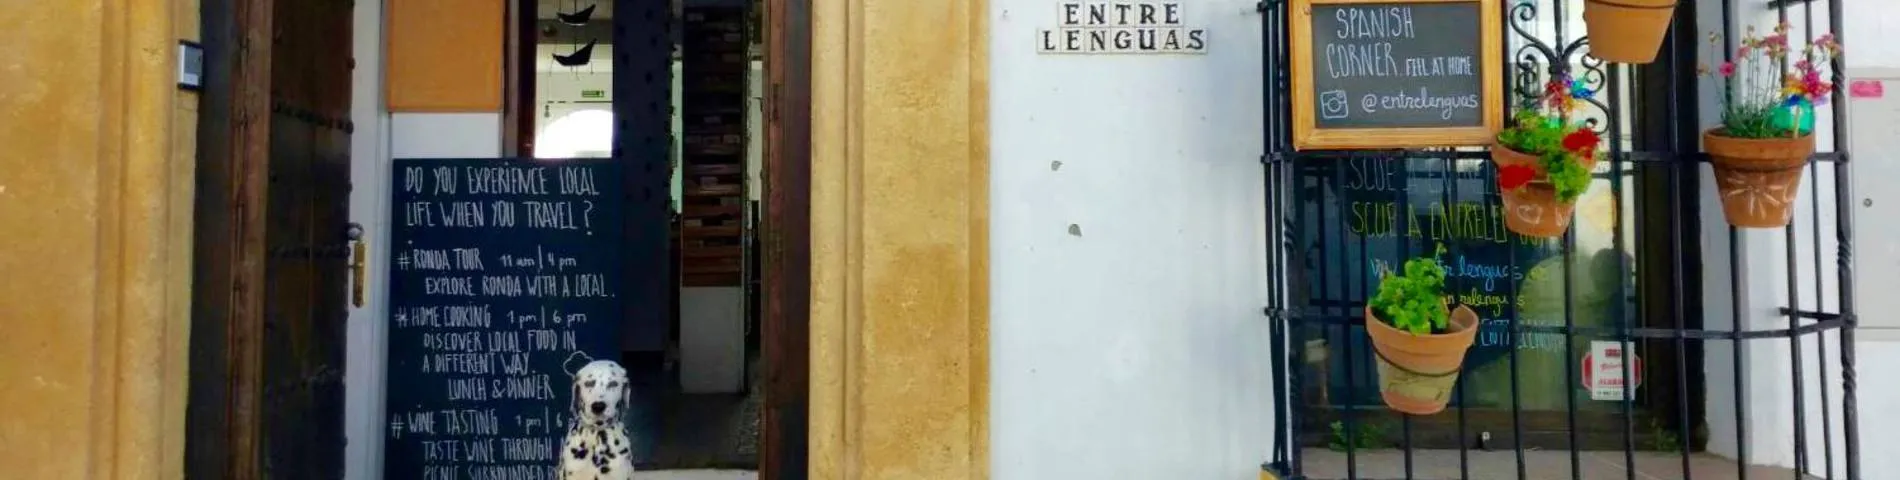 Escuela Entrelenguas afbeelding 1